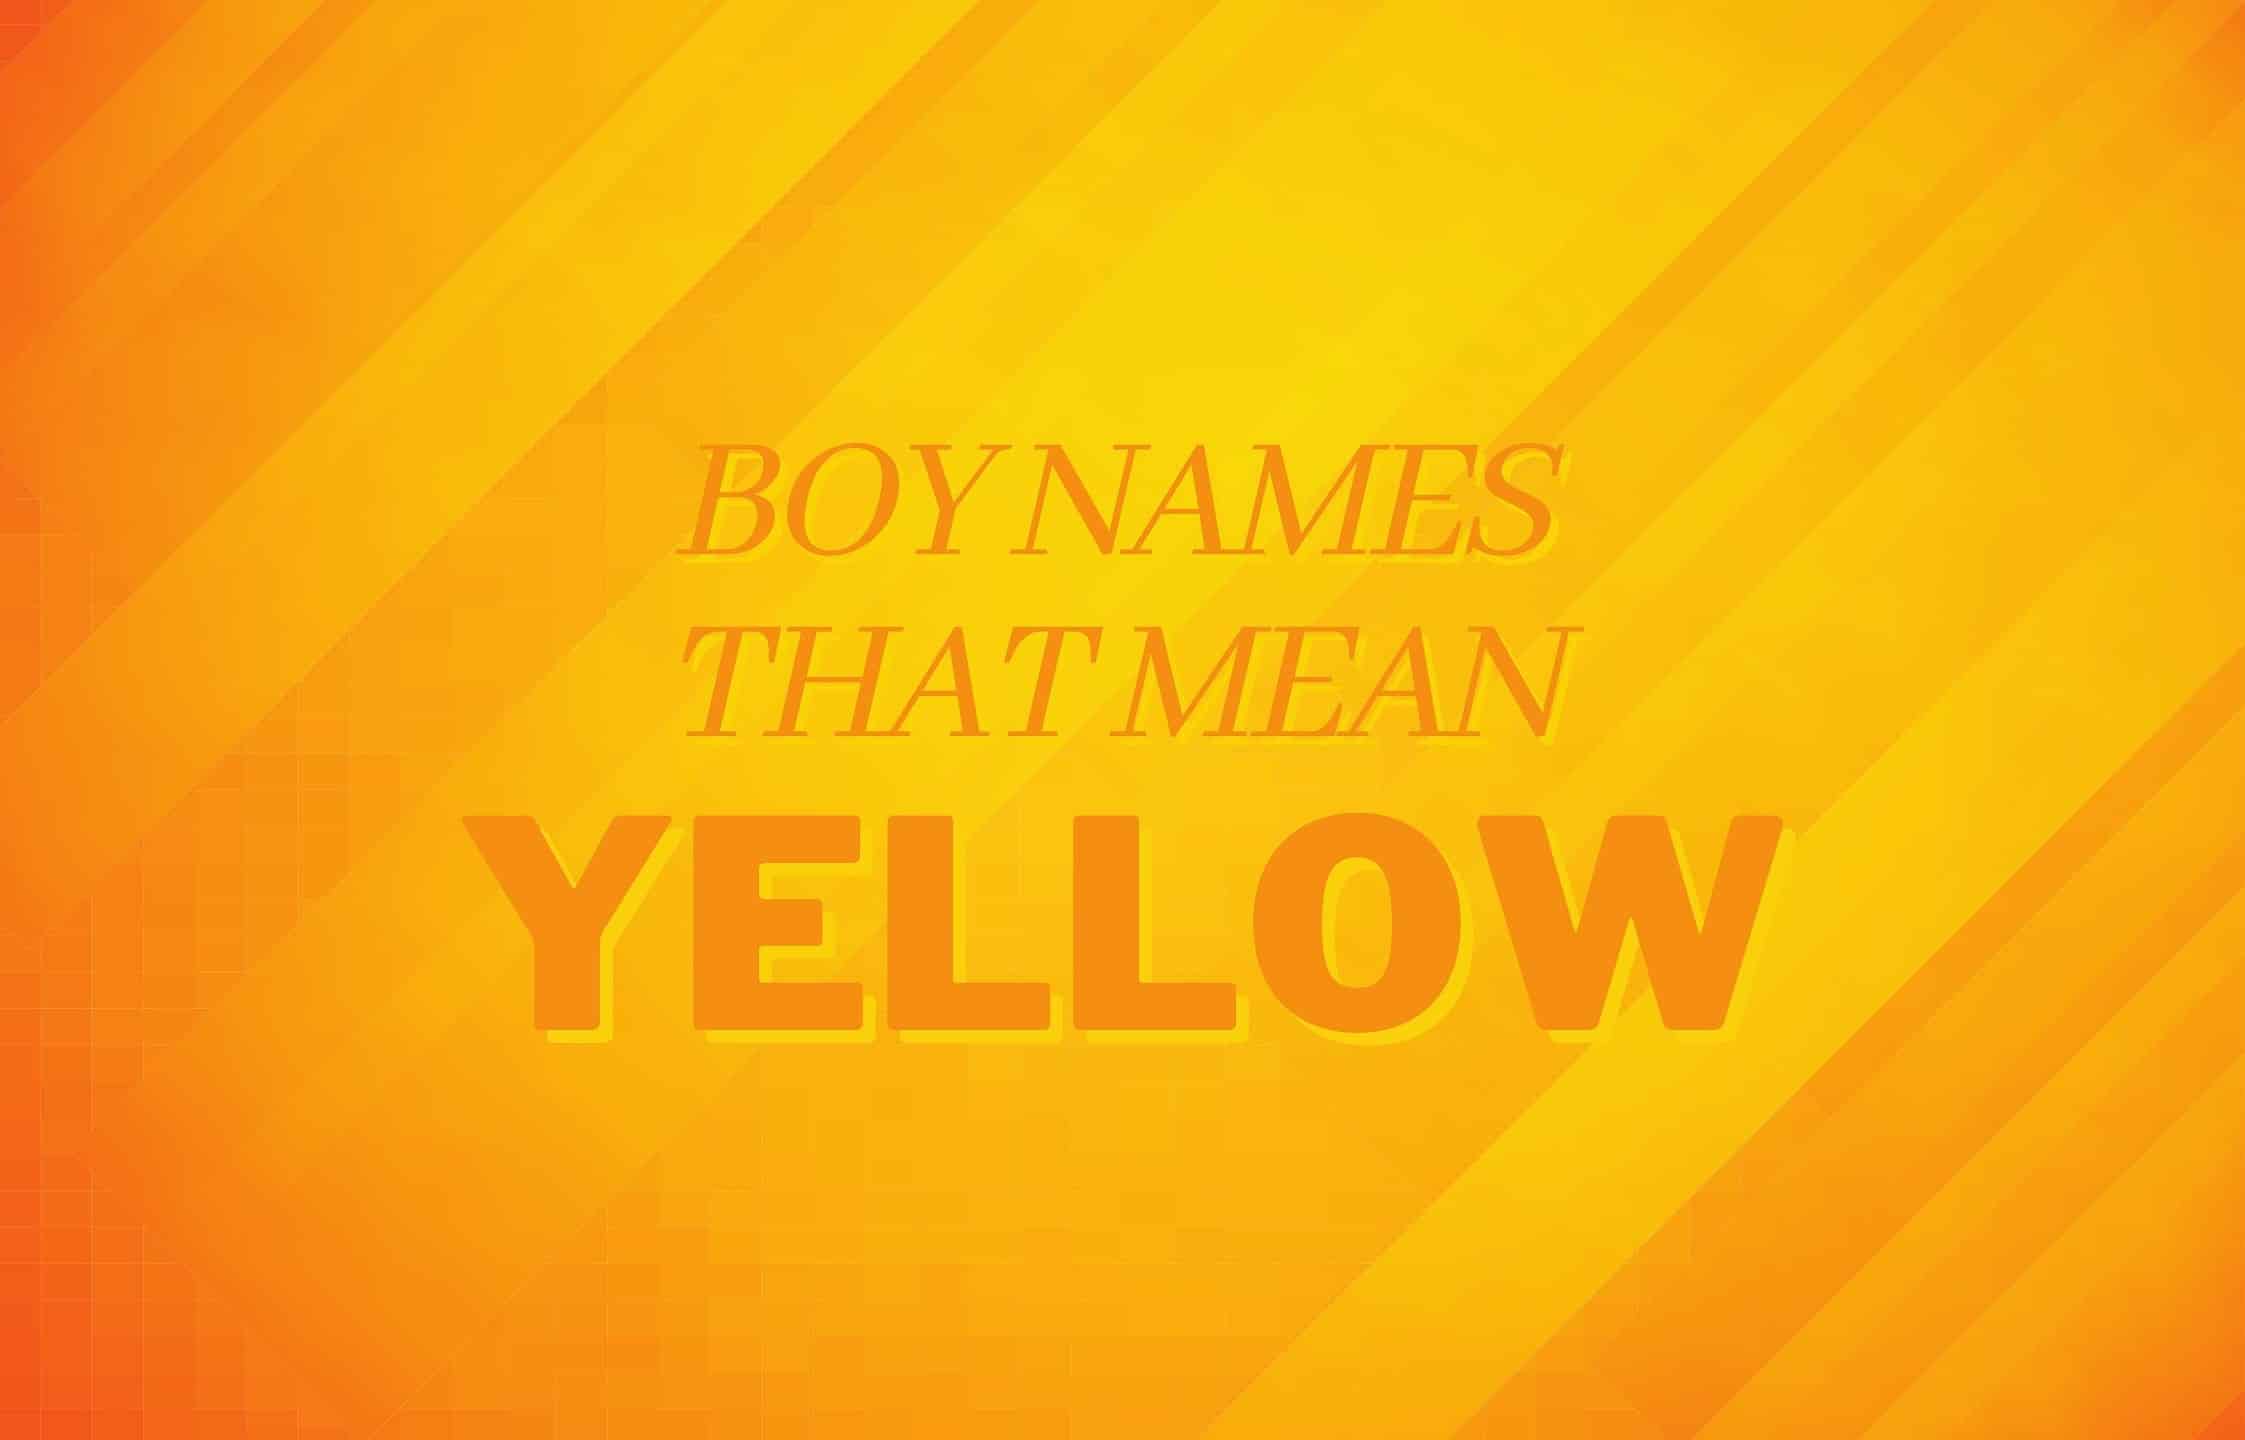 Boy names that mean yellow